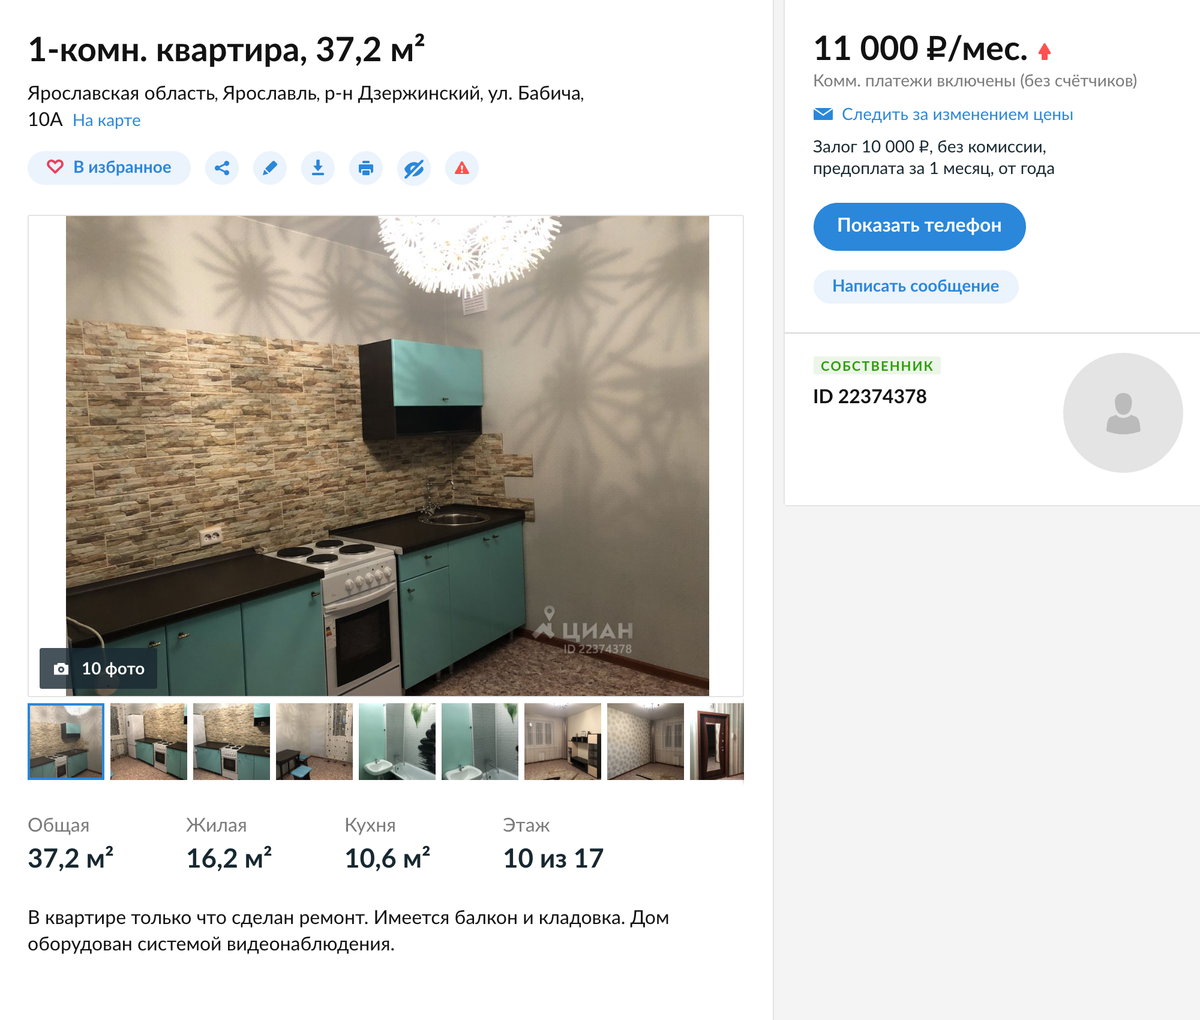 Приличная однушка в спальном районе Ярославля за 11 000 рублей в месяц